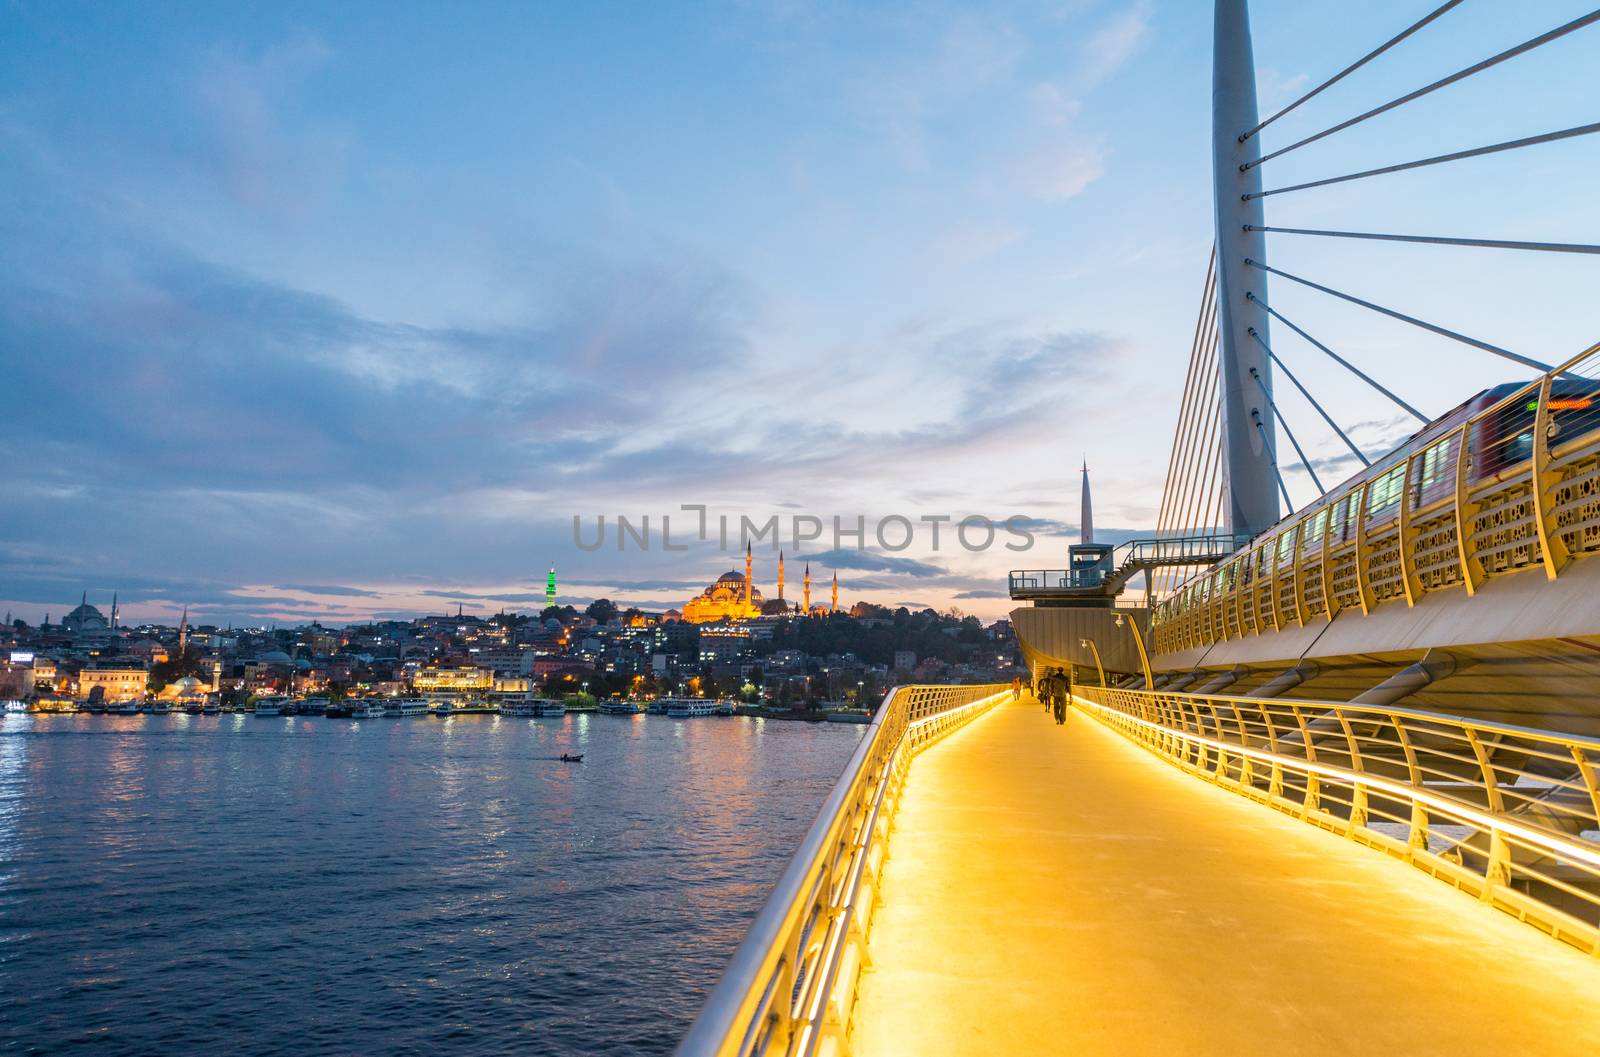 New Galata Bridge in Istanbul.